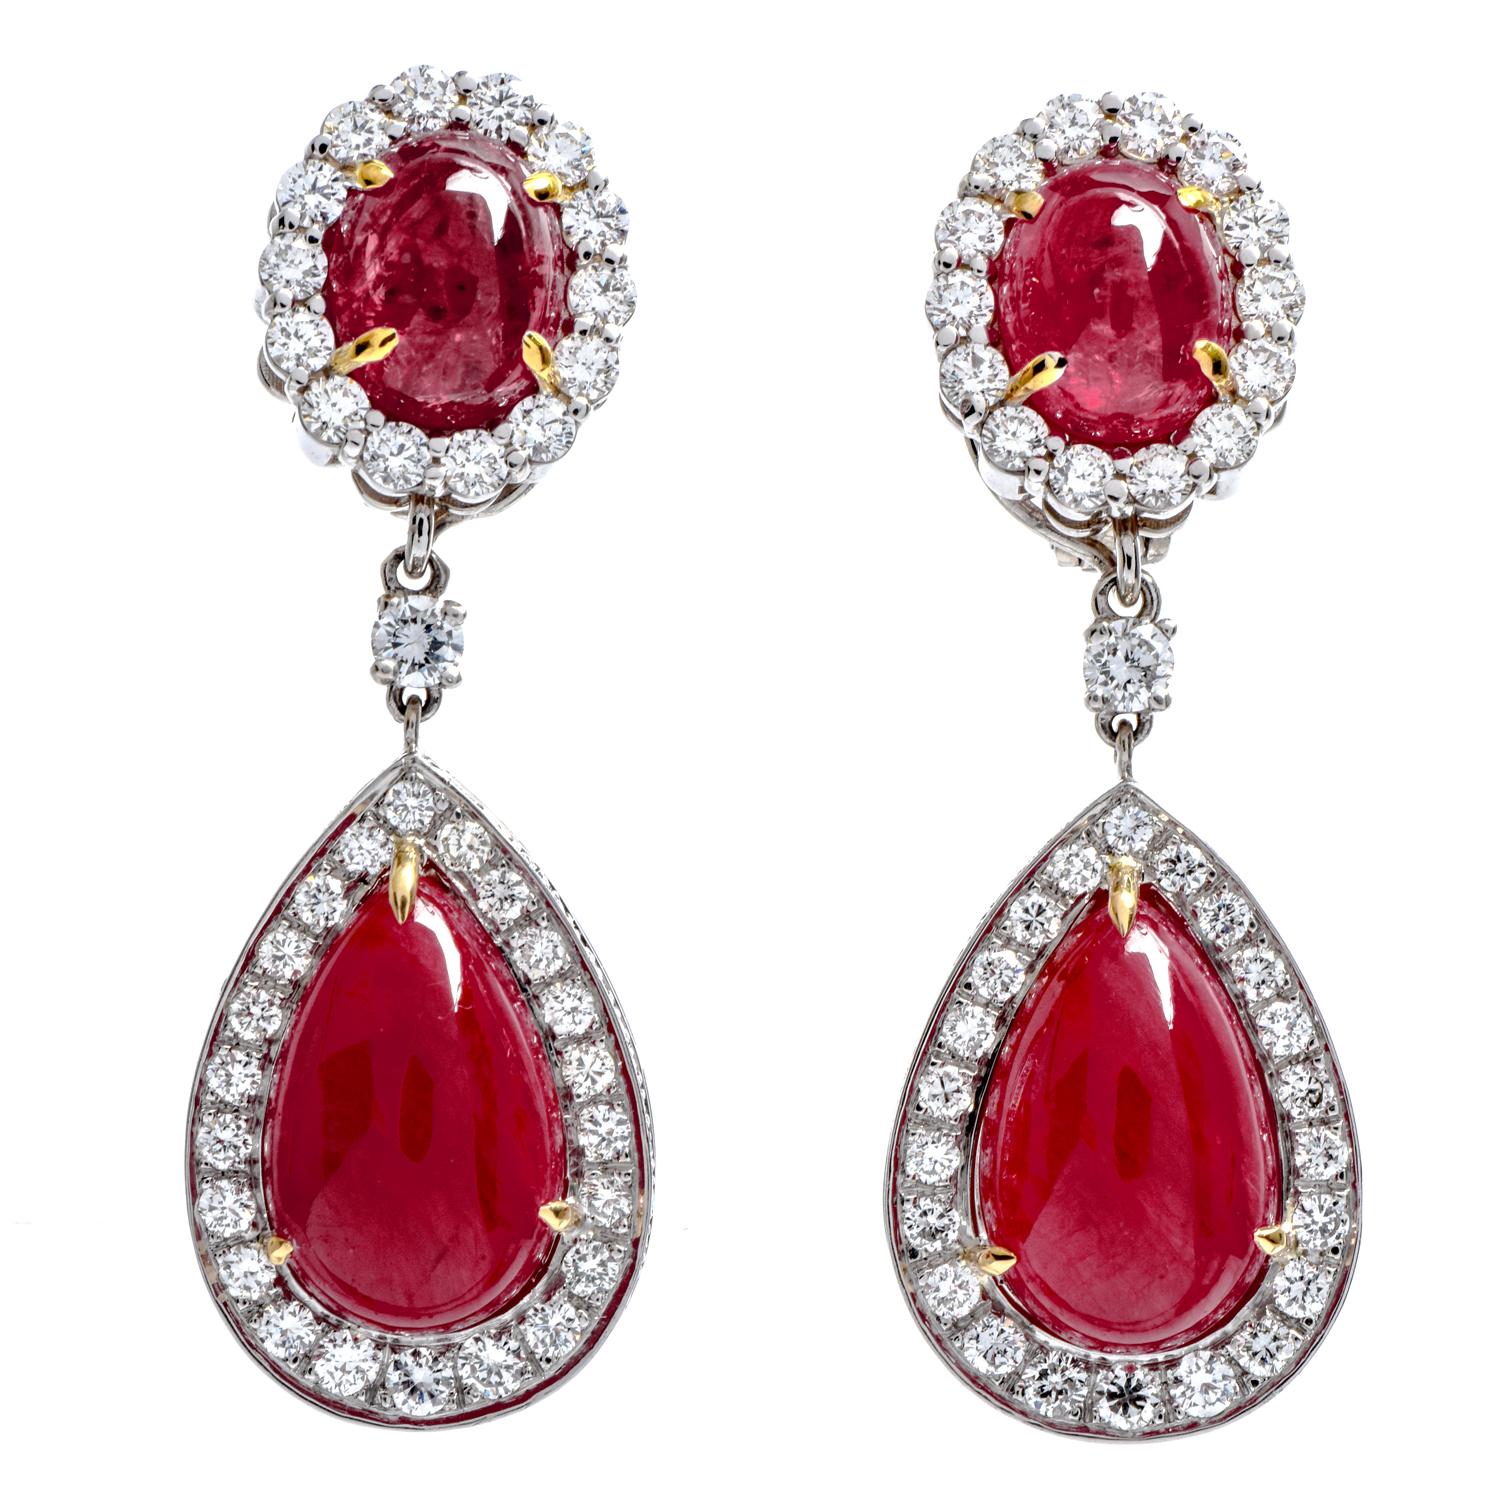 Lassen Sie sich Tag und Nacht von diesen glamourösen roten Rubin- und Diamant-Ohrringen verzaubern.  

 Clip-on mit klappbarer Stange aus luxuriösem Platin.

Umgeben von einem Halo aus (74) echten Diamanten im Rundschliff, die in Zacken gefasst sind